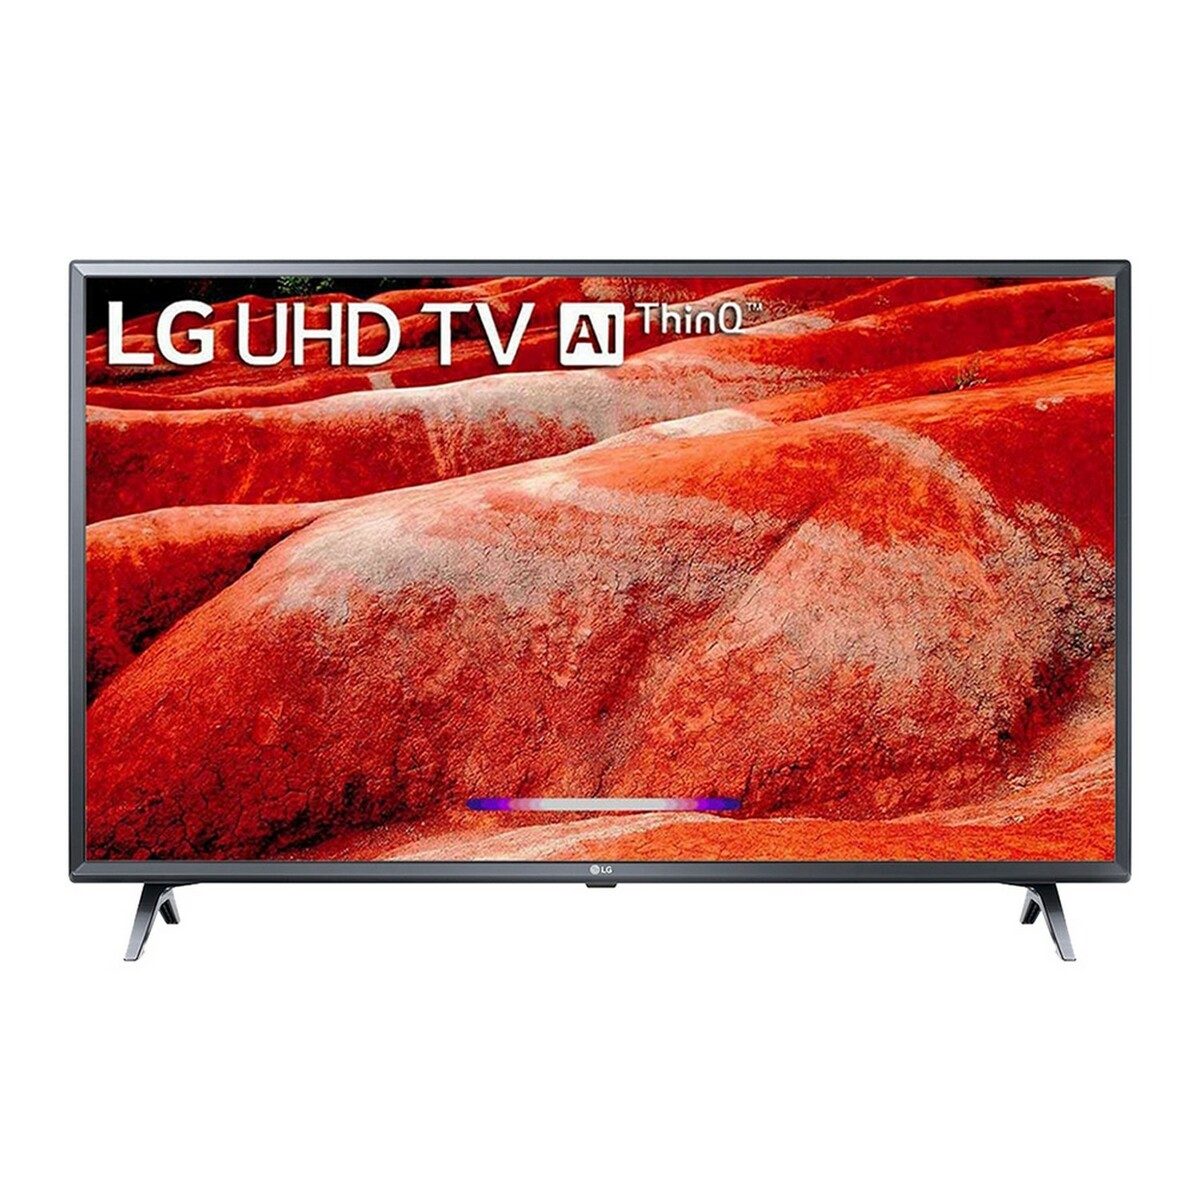 LG UHD LED TV 43UM7790 43"